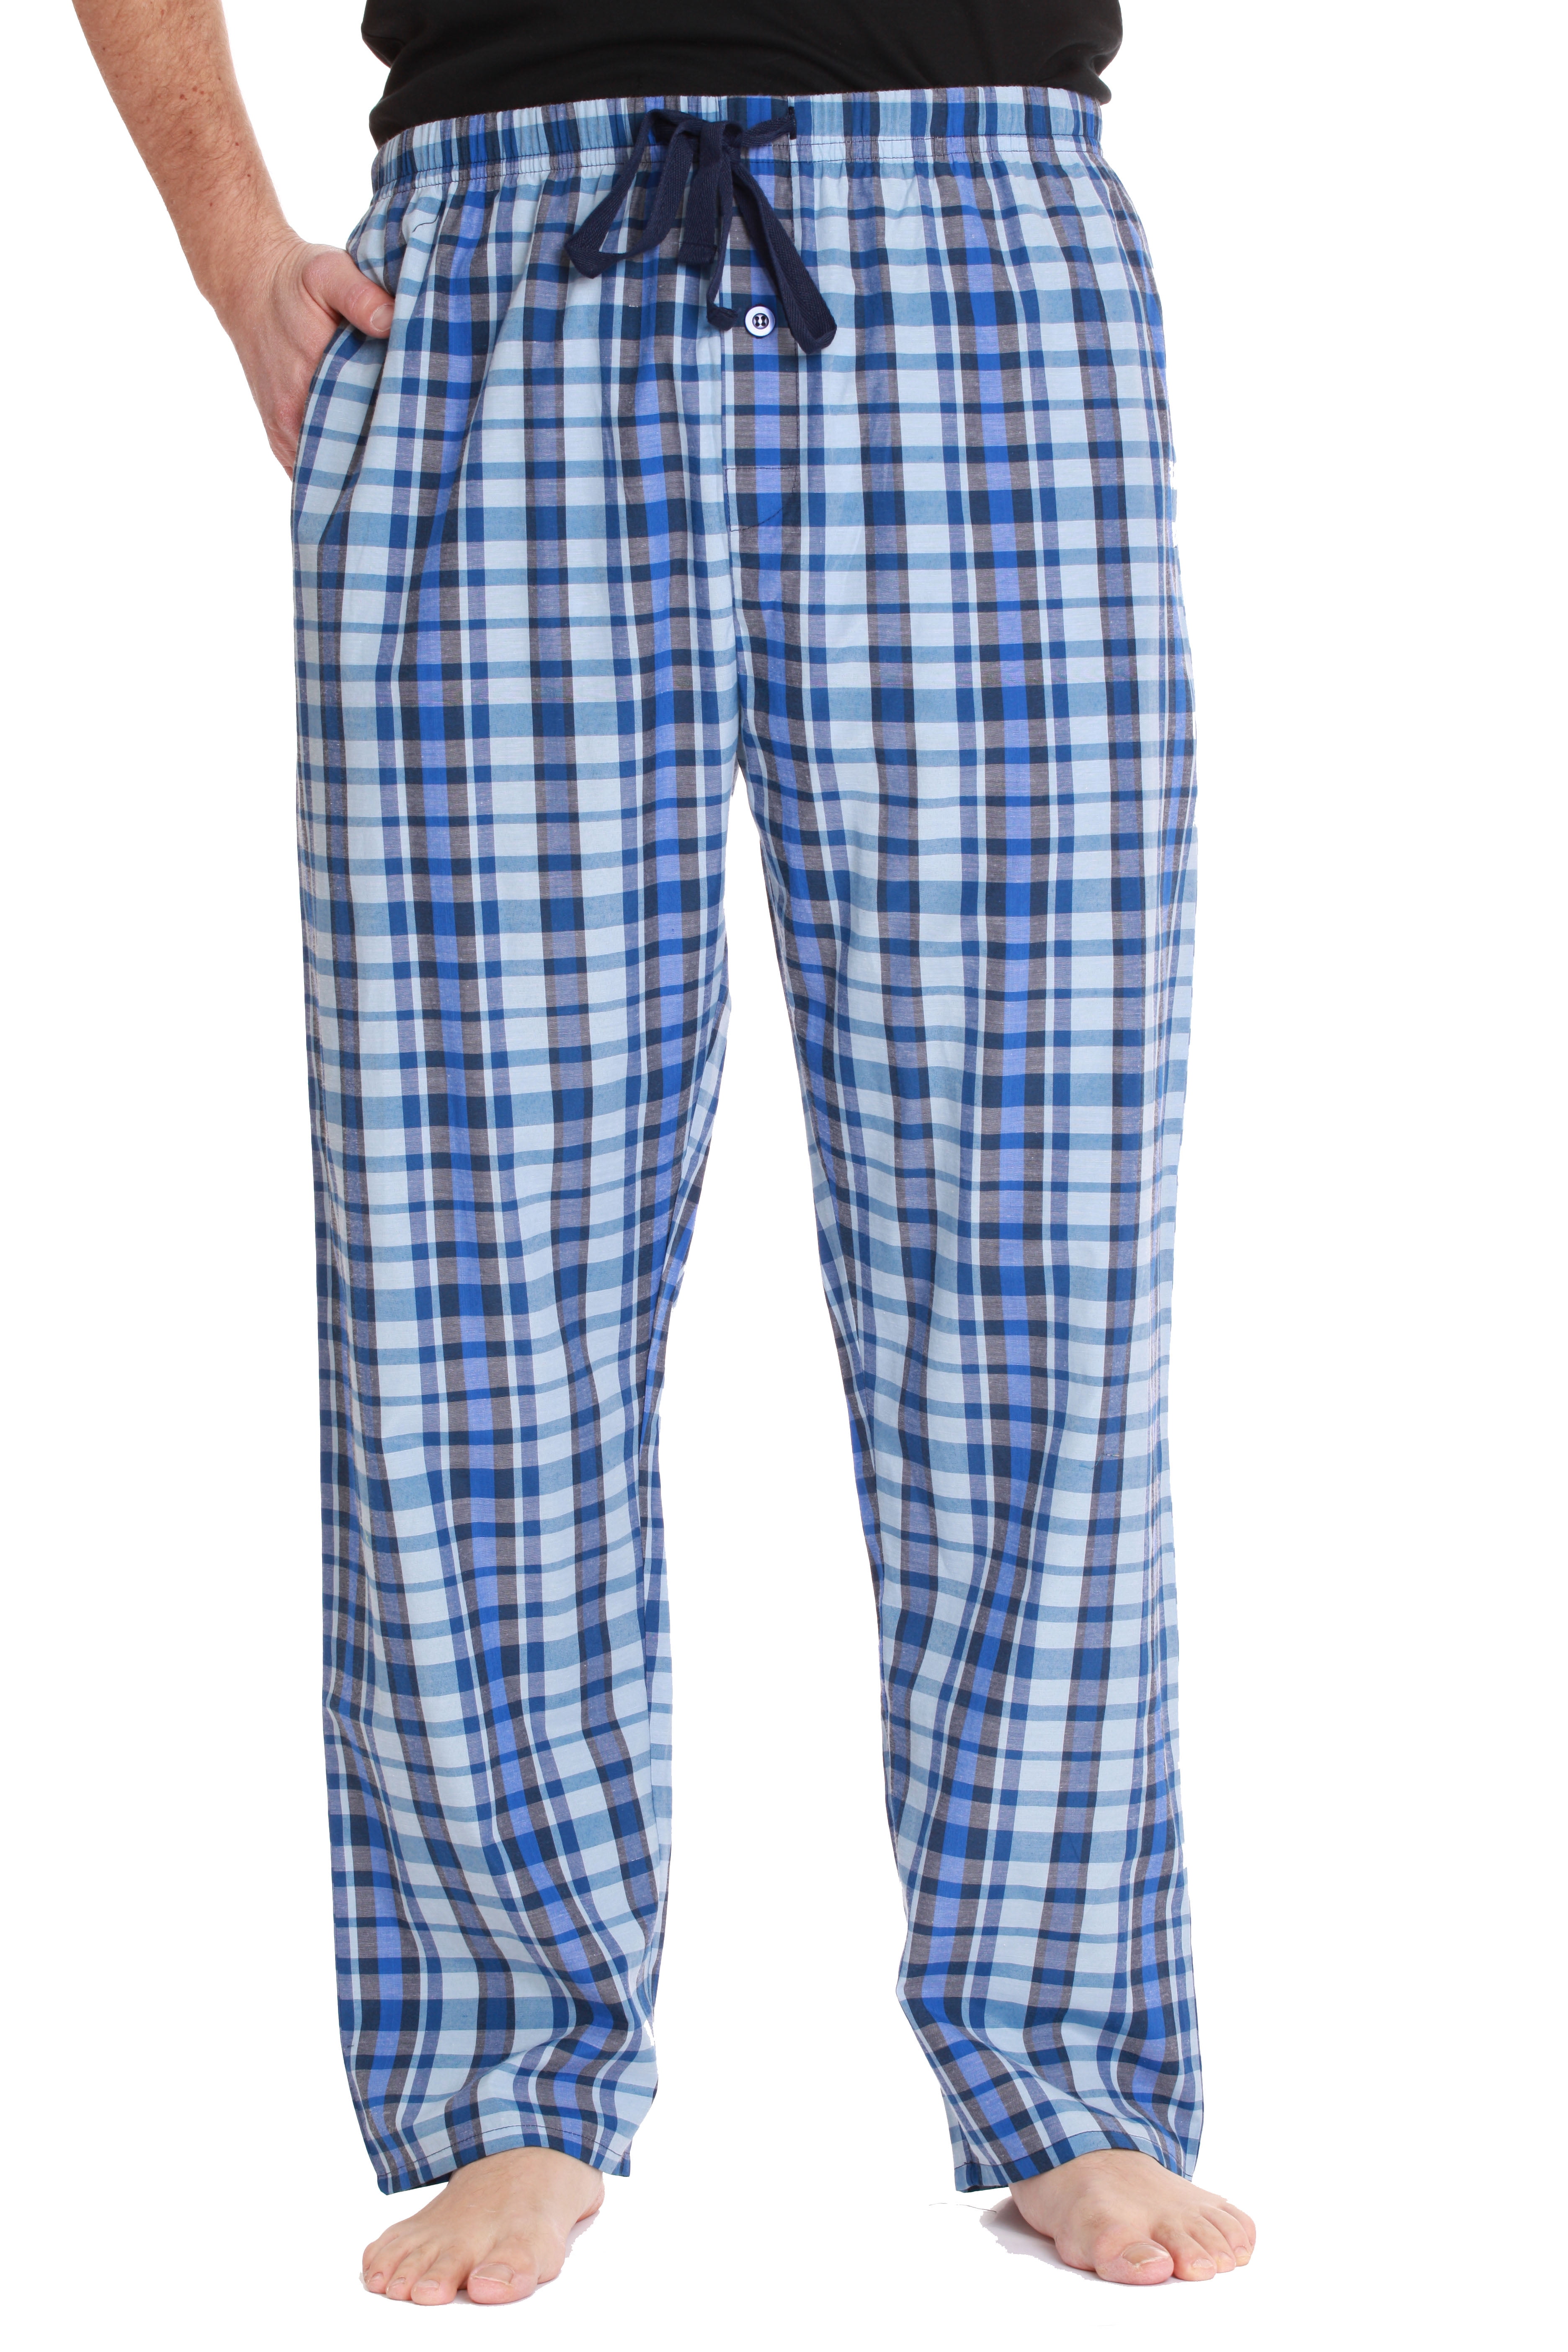 45905-1B-XXL #followme Mens Flannel Pajama Pants Mens Pajamas : :  Clothing, Shoes & Accessories